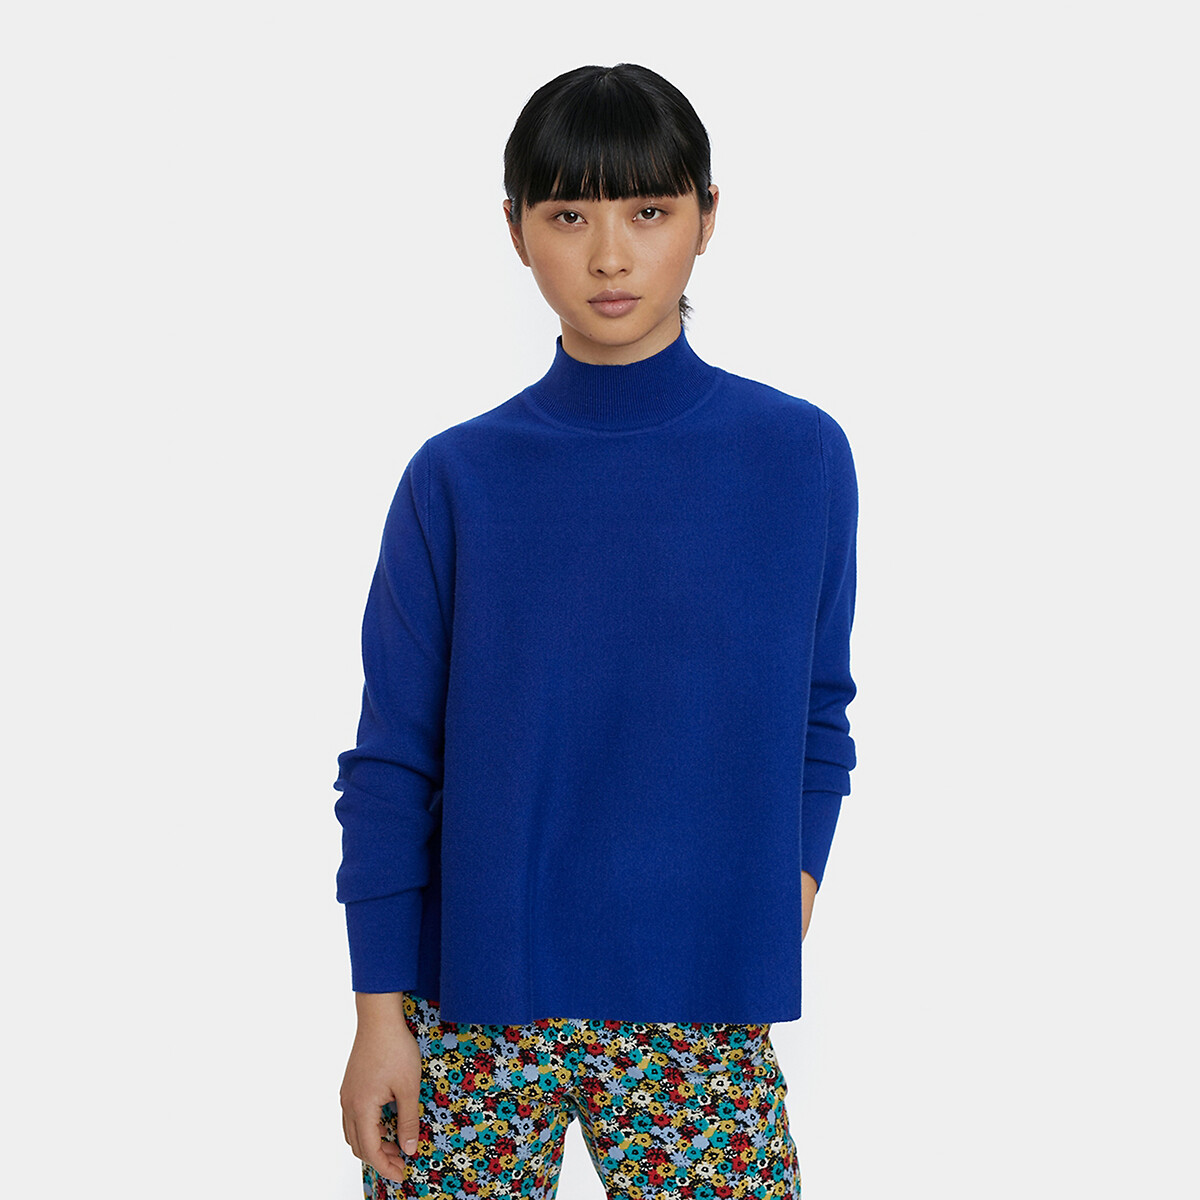 Пуловер La Redoute С воротником-стойкой широкий покрой S синий, размер S - фото 1